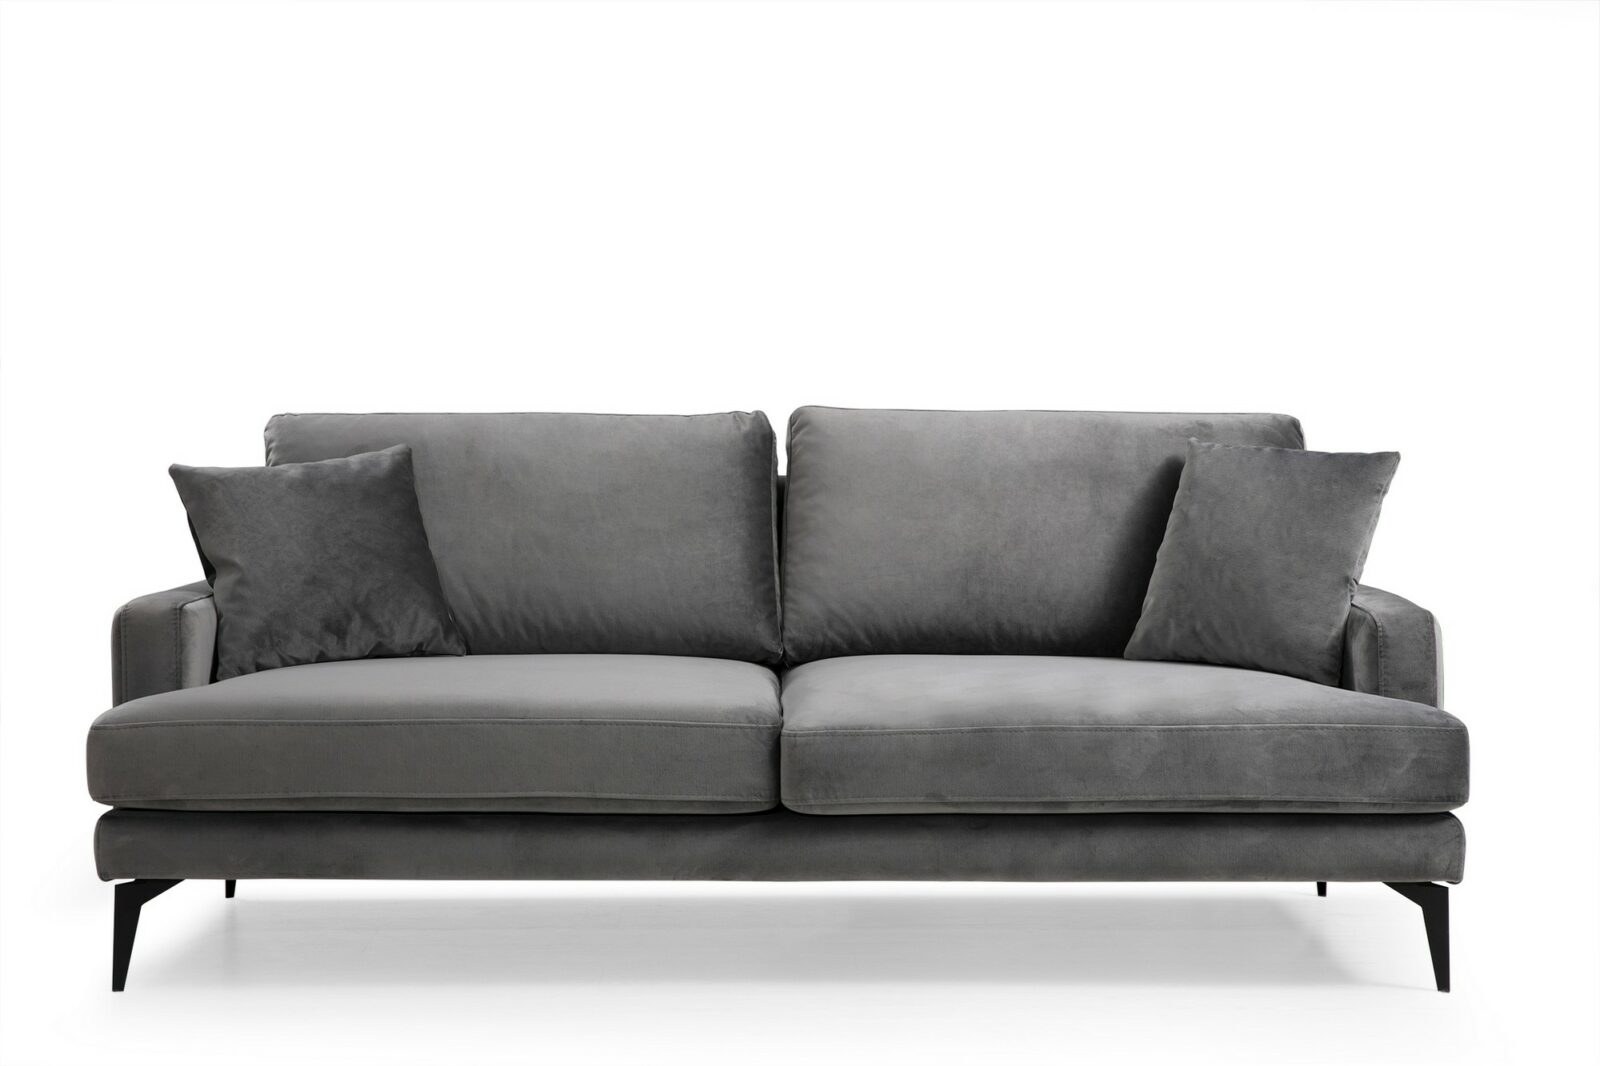 Atelier del sofa třímístná pohovka PAPIRA šedá